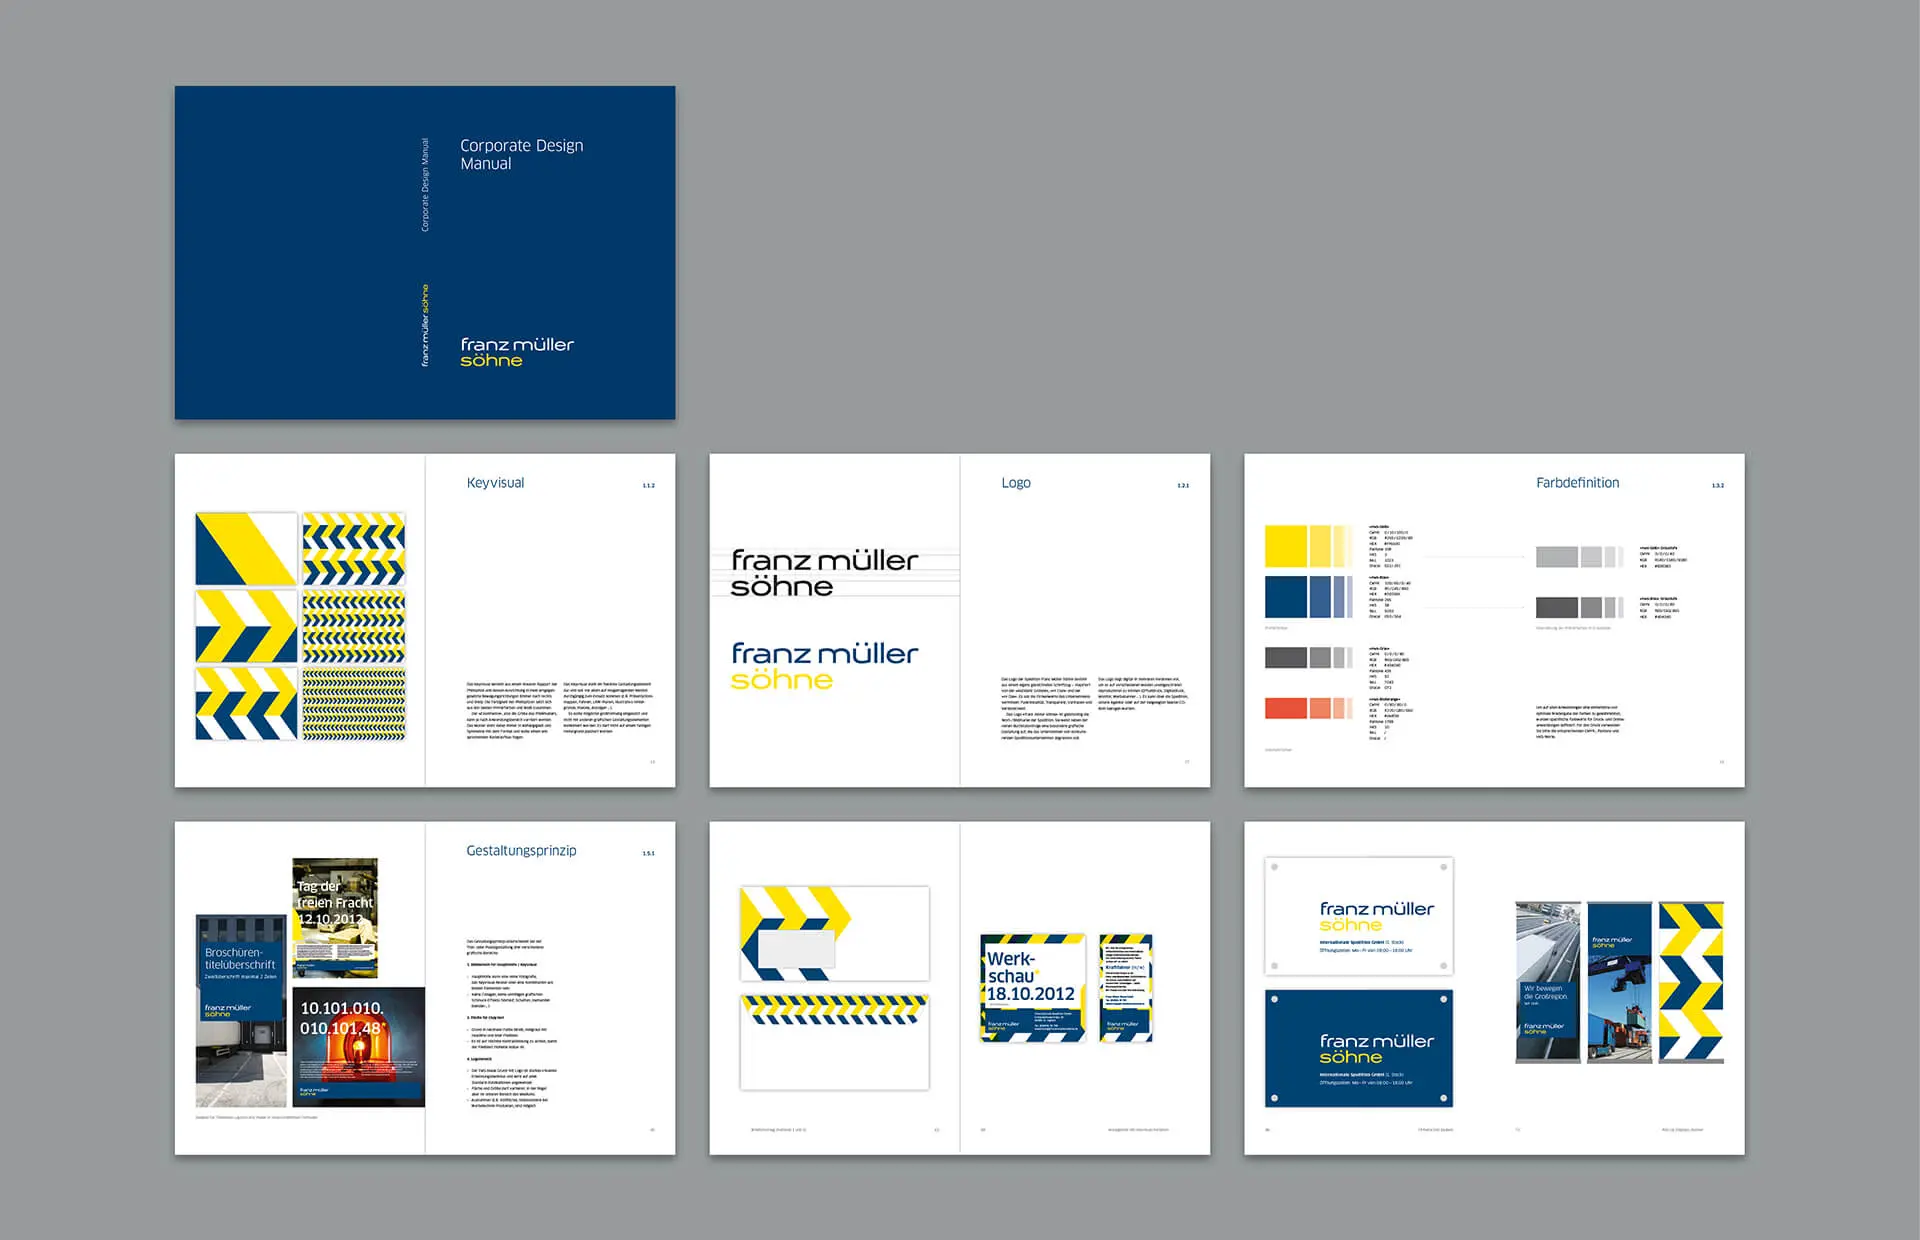 Beispiel eines Corporate Design Manuals für eine Spedition © Diemer & Schweig Designstudio